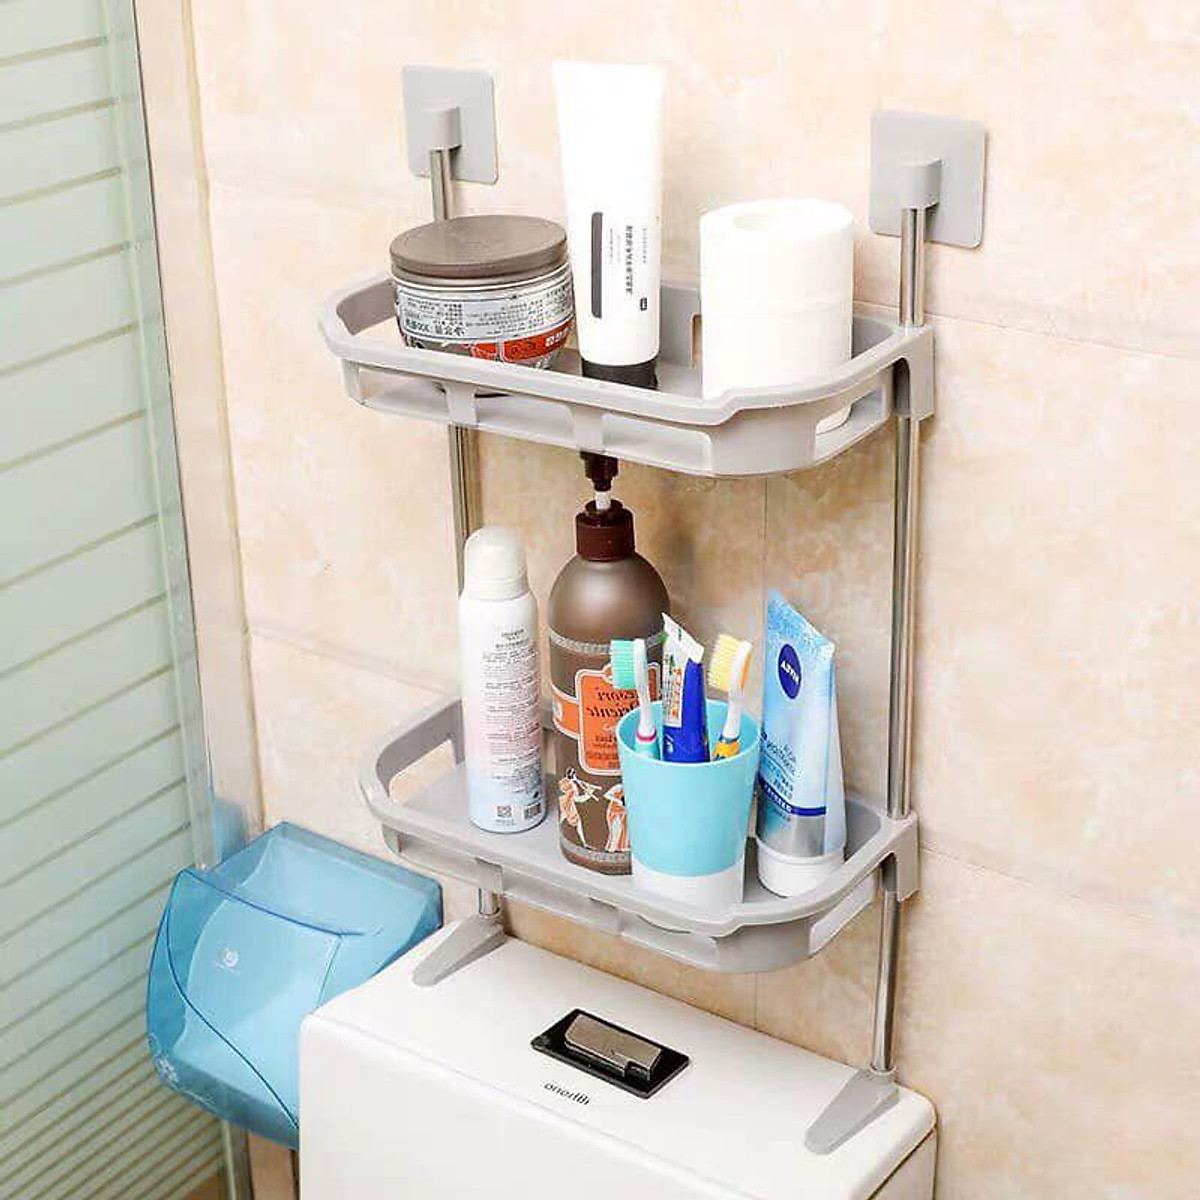 Kệ đựng đồ tắm: Kệ đựng đồ tắm sẽ giúp cho không gian phòng tắm của bạn trông gọn gàng hơn. Với những kiểu dáng đa dạng, sang trọng, các sản phẩm kệ đựng đồ tắm càng làm tăng thêm tính thẩm mỹ cho phòng tắm của bạn. Hãy truy cập để cập nhật và lựa chọn sản phẩm kệ đựng đồ tắm đẹp mắt, chất lượng tốt nhất cho không gian phòng tắm của bạn!